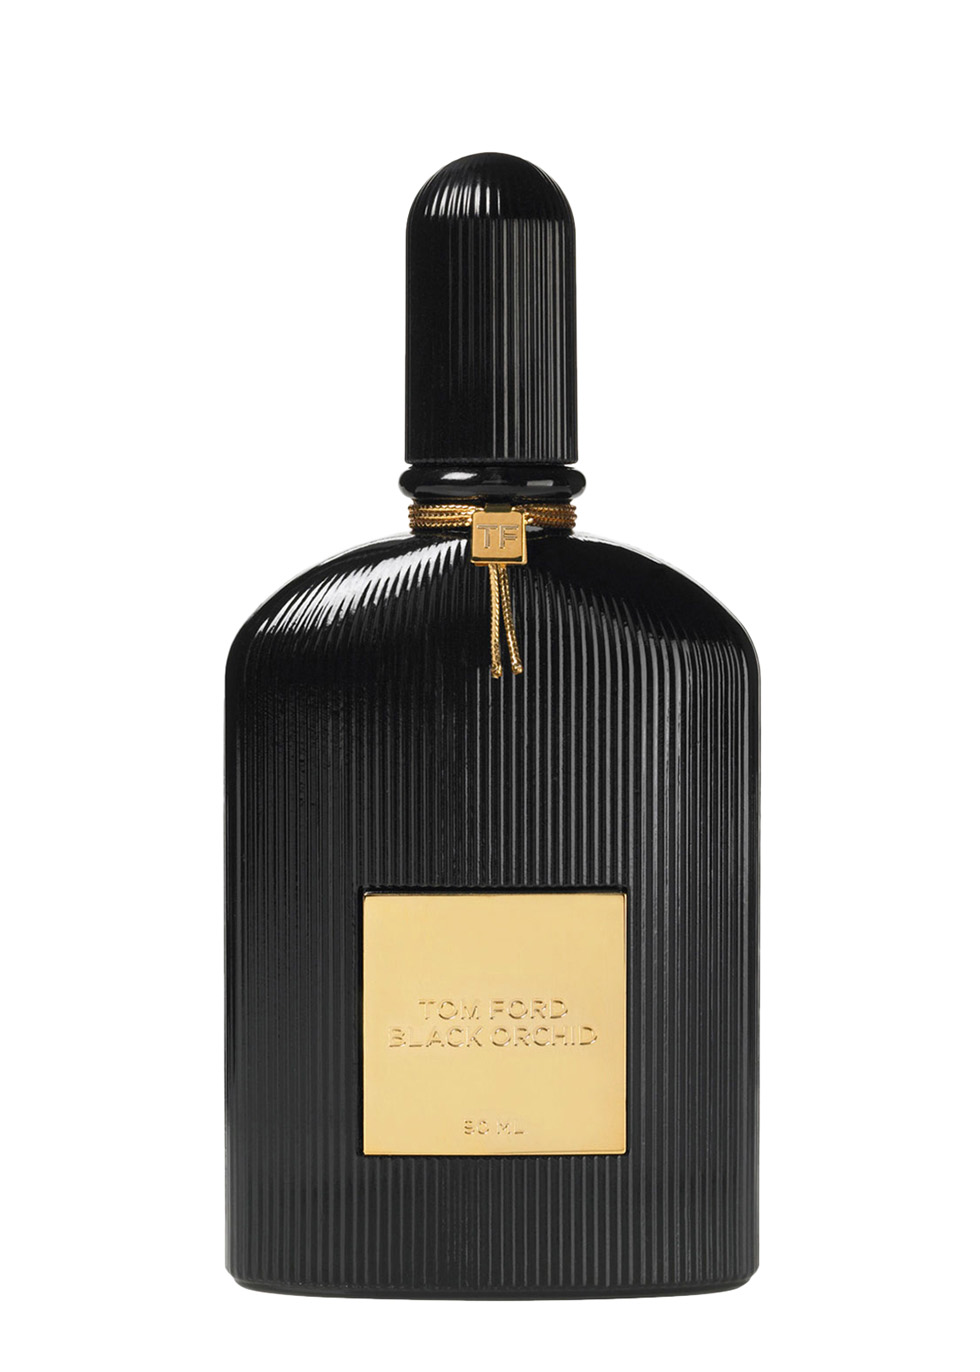 Tom Ford Black Orchid Eau De Parfum 30ml - Harvey Nichols